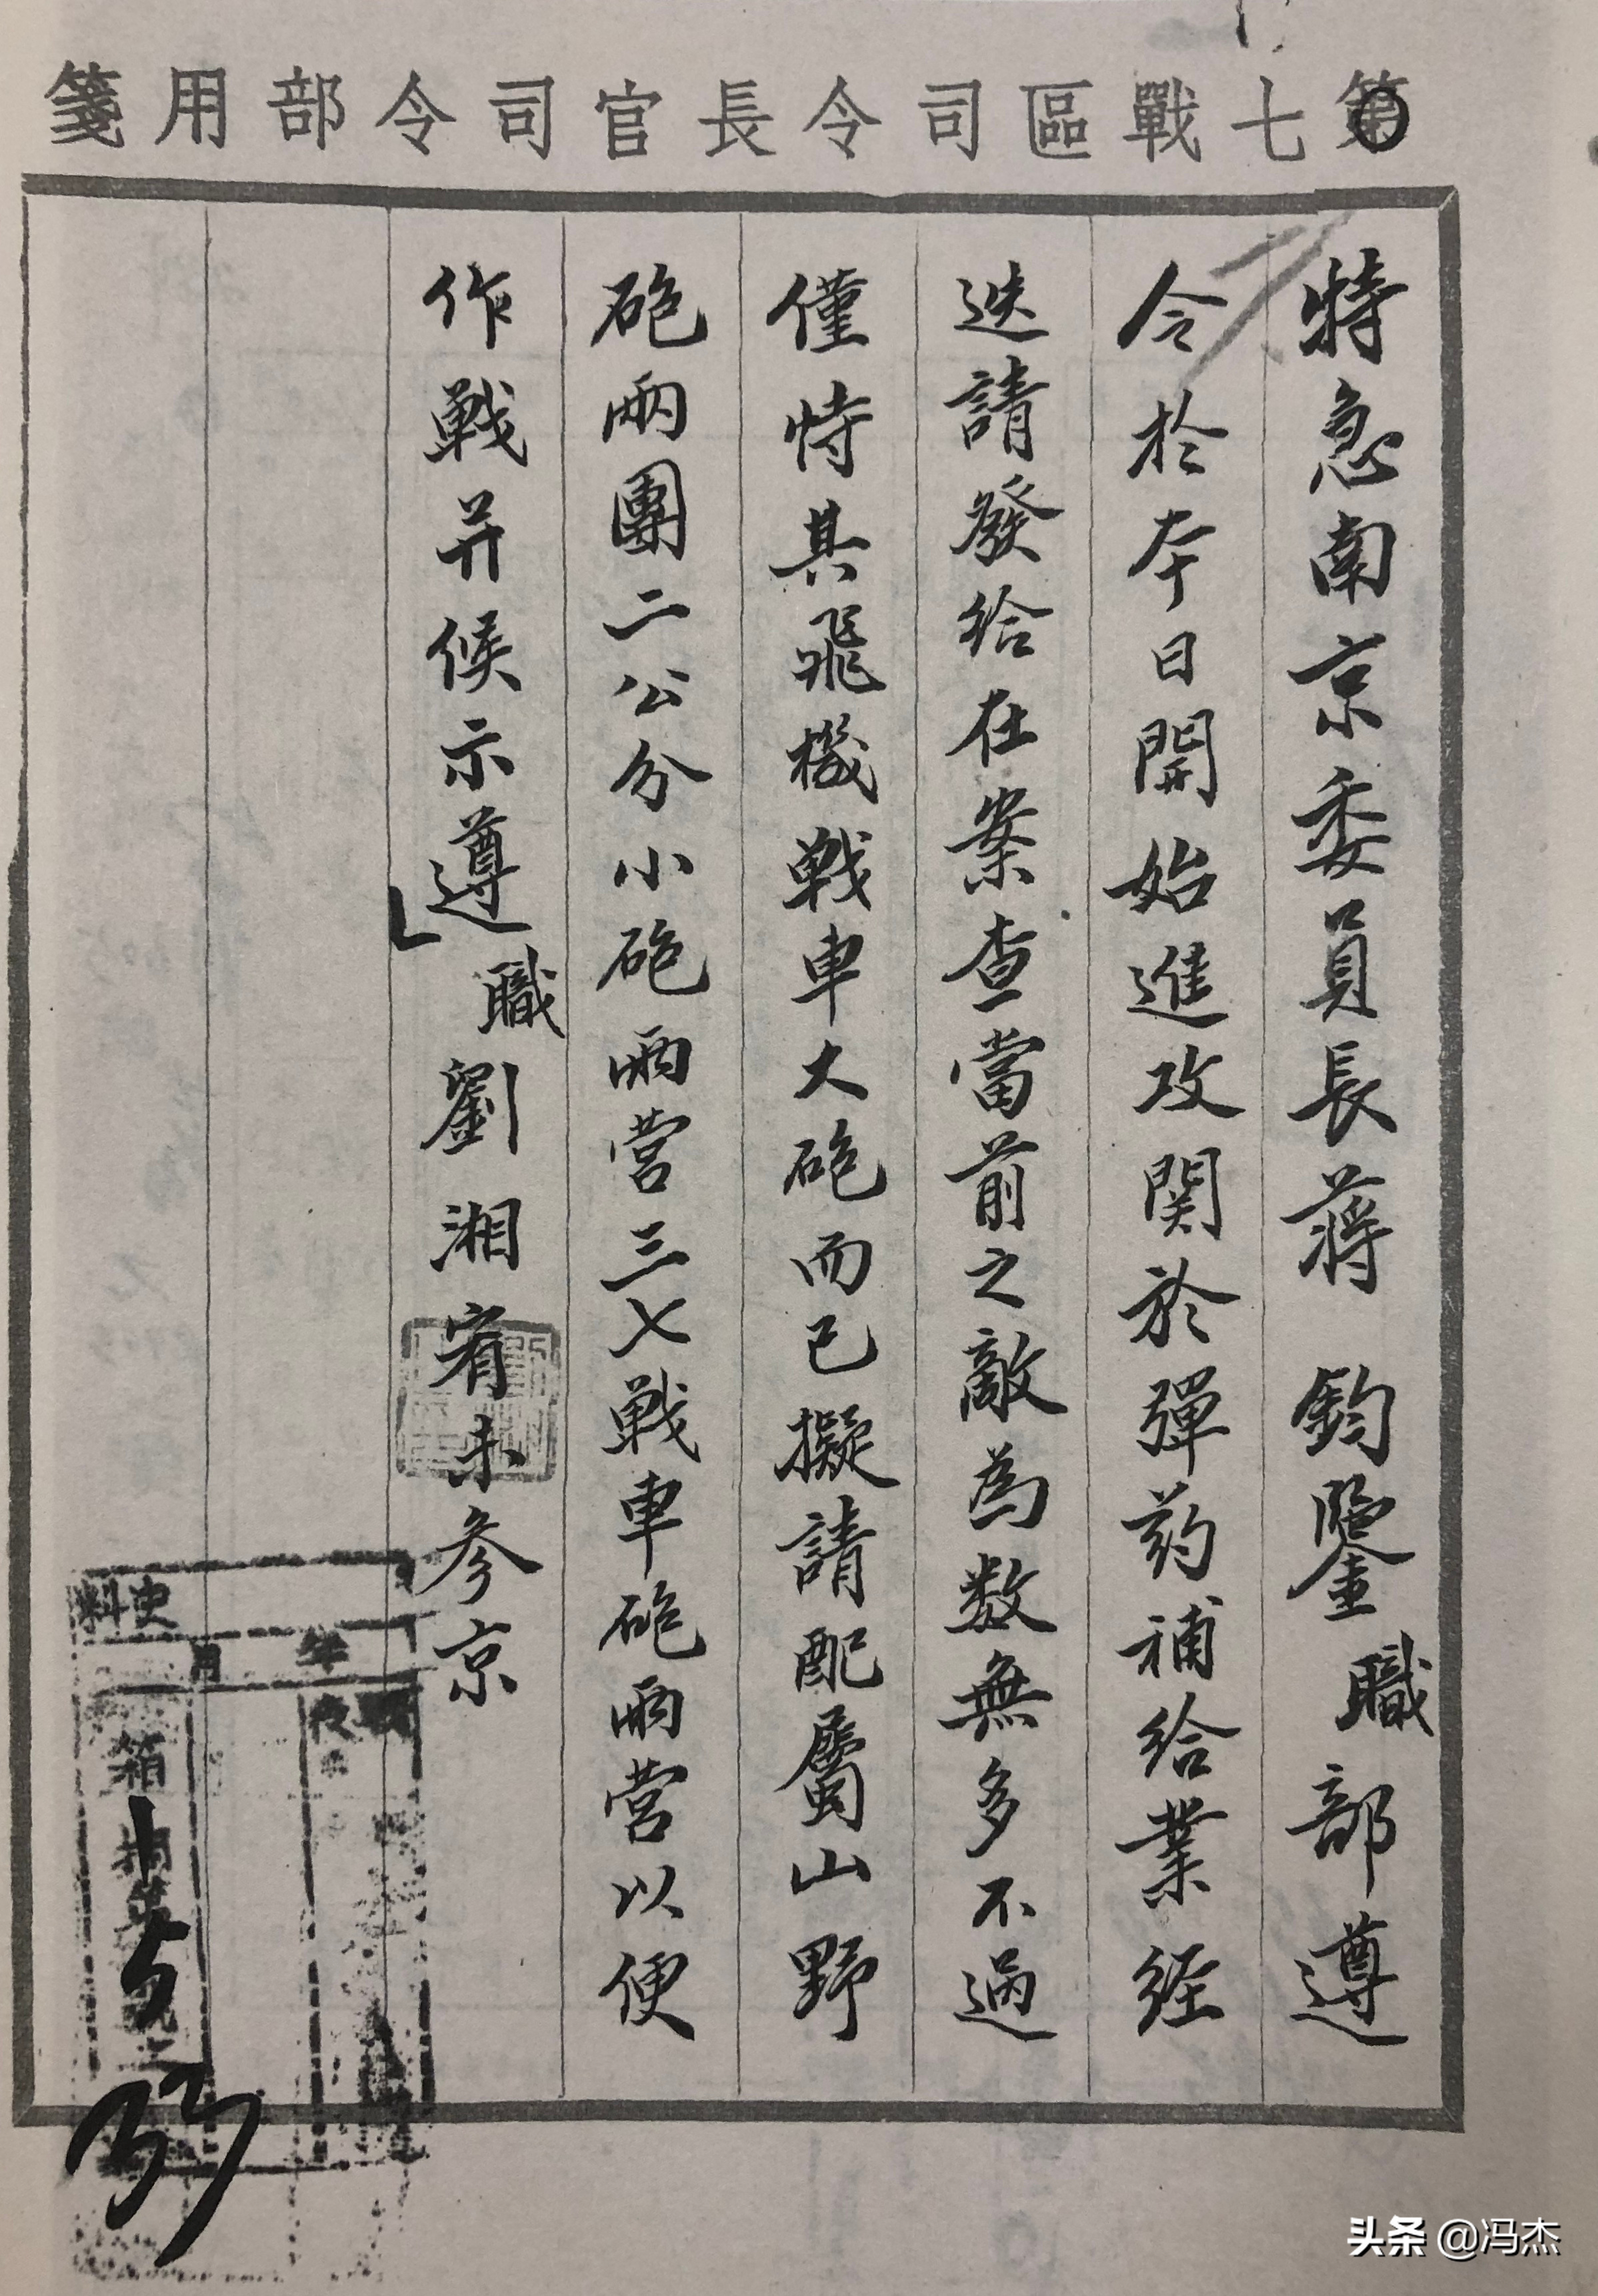 南京1937：民国时期的档案文献，还原蒋介石颁发命令微操过程